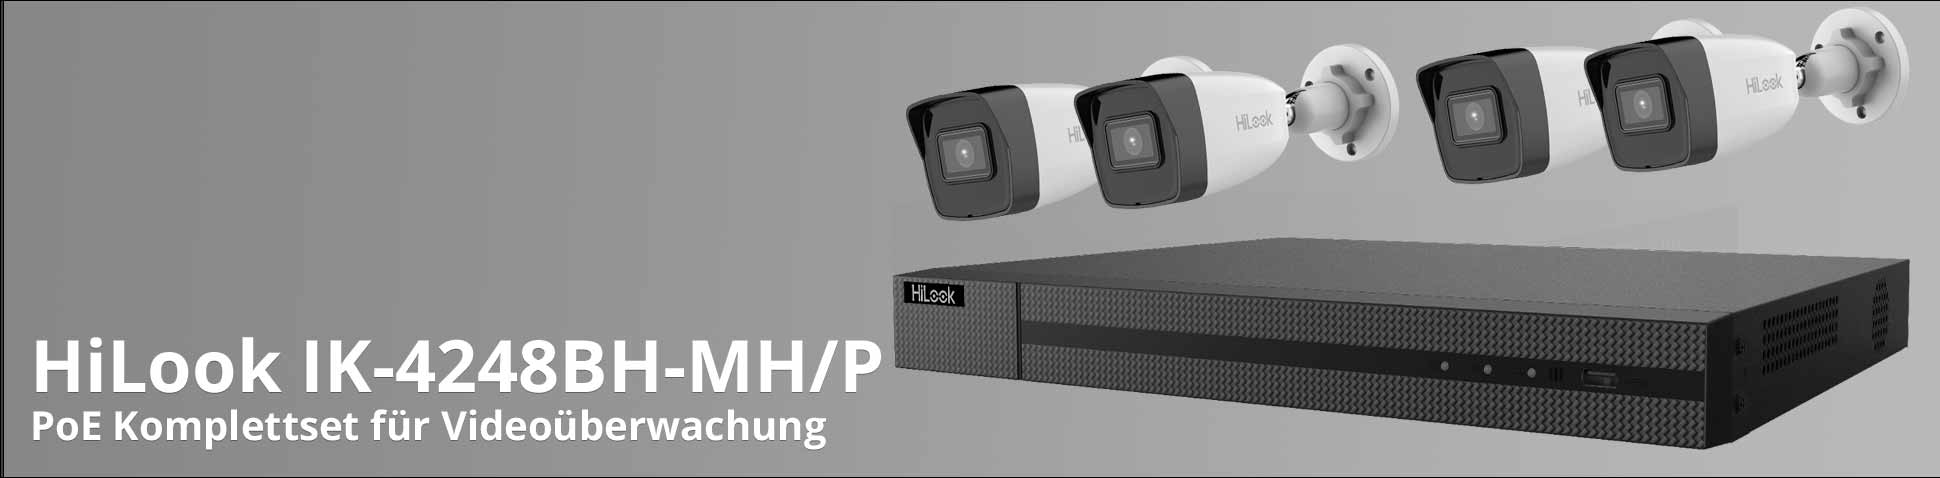 HiLook IK-4248BH-MH/P PoE Komplettset für Videoüberwachung mit 2 TB Festplatte